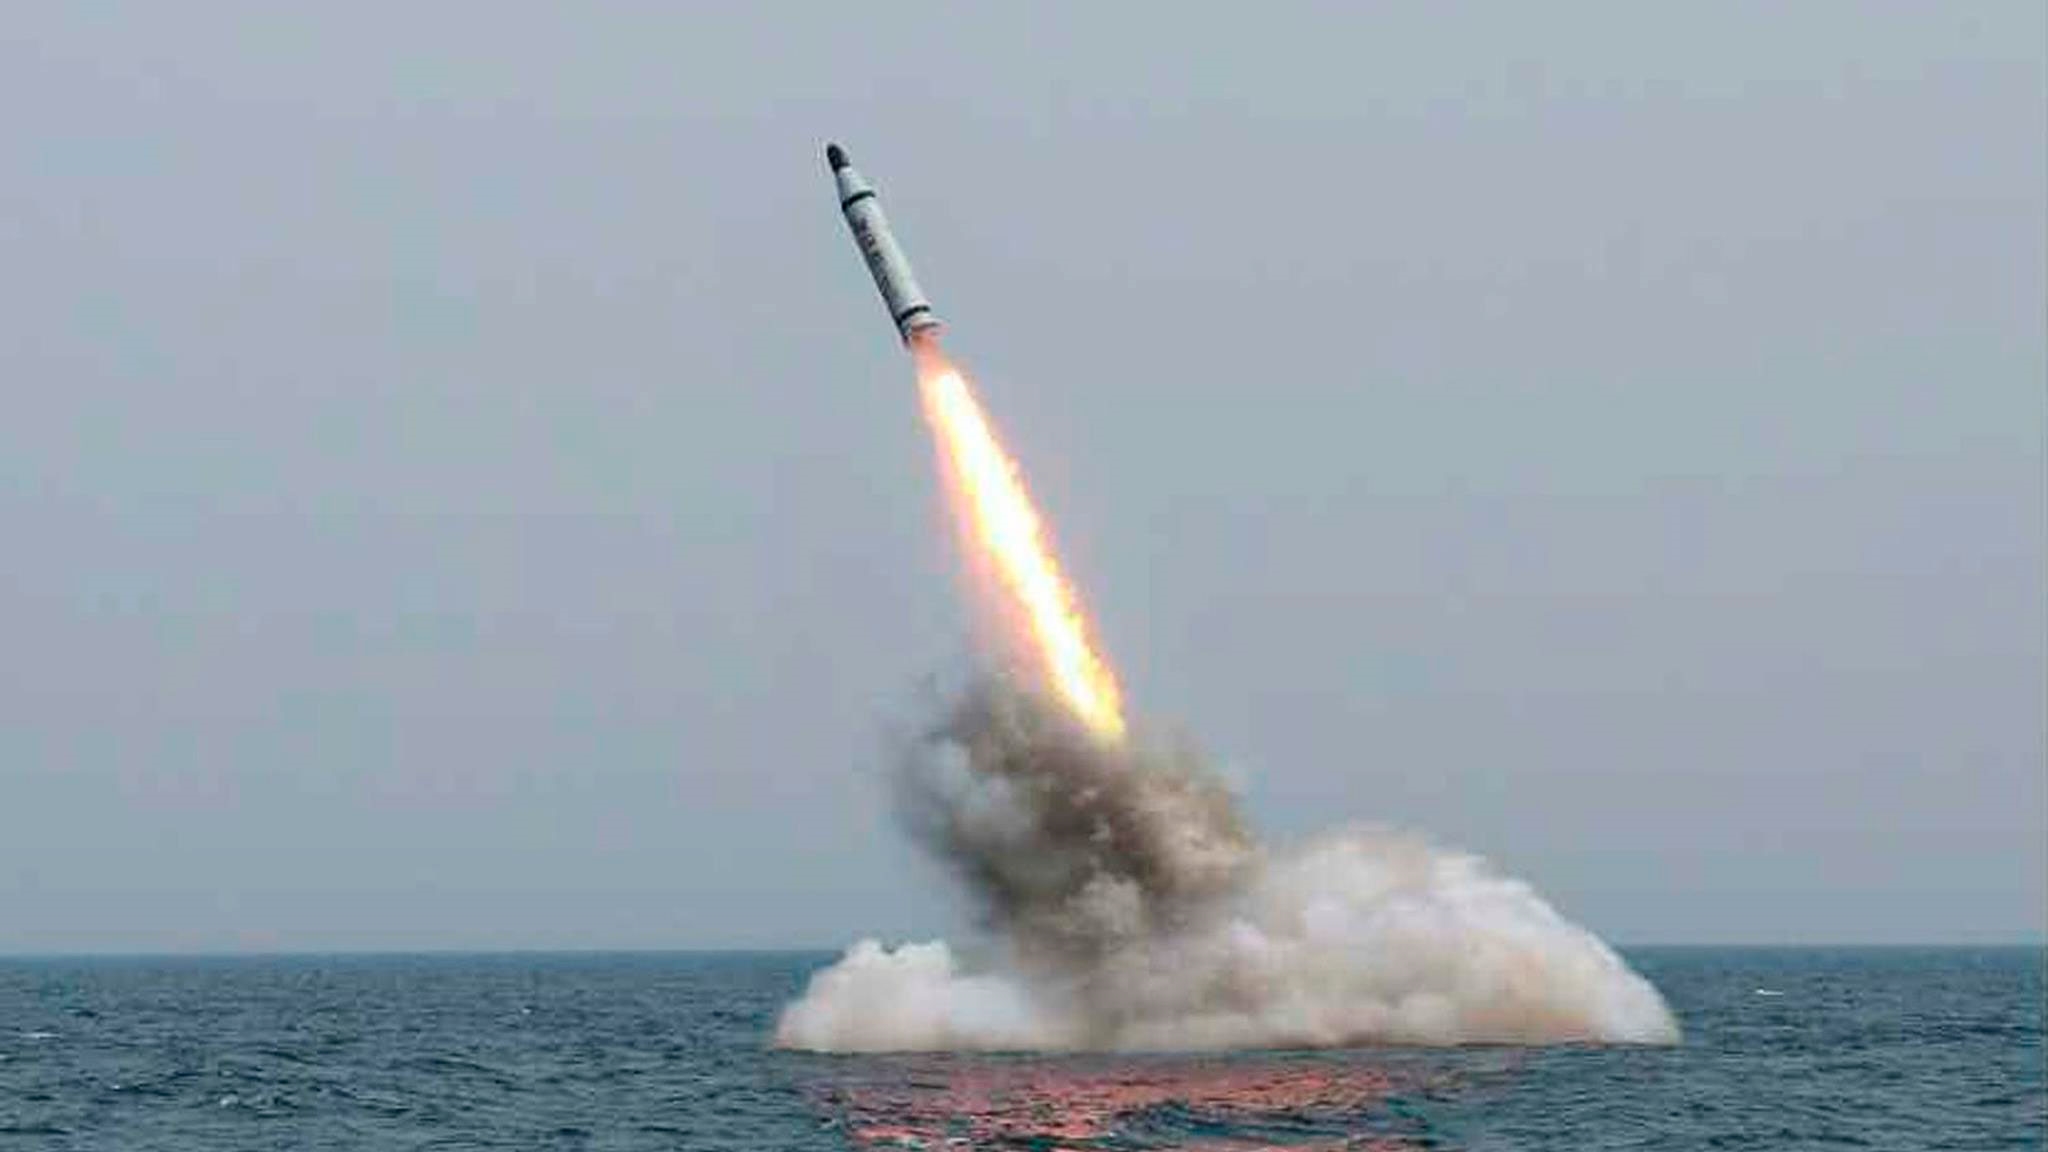 Разбор полёта: что известно о новом пуске баллистической ракеты из КНДР?